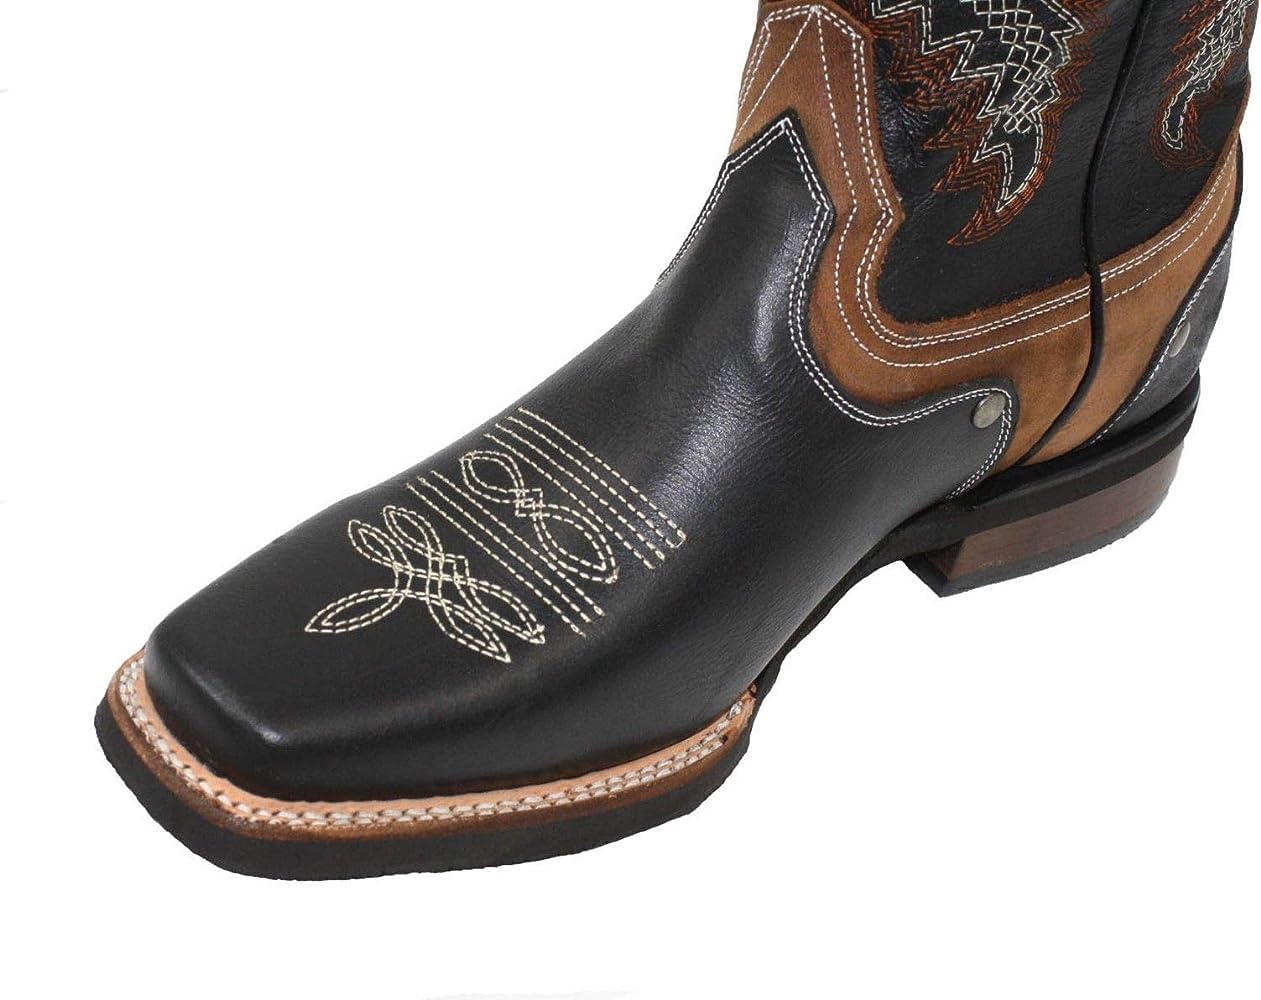 Las botas de rodeo son ideales para bailar country y lucir auténtico